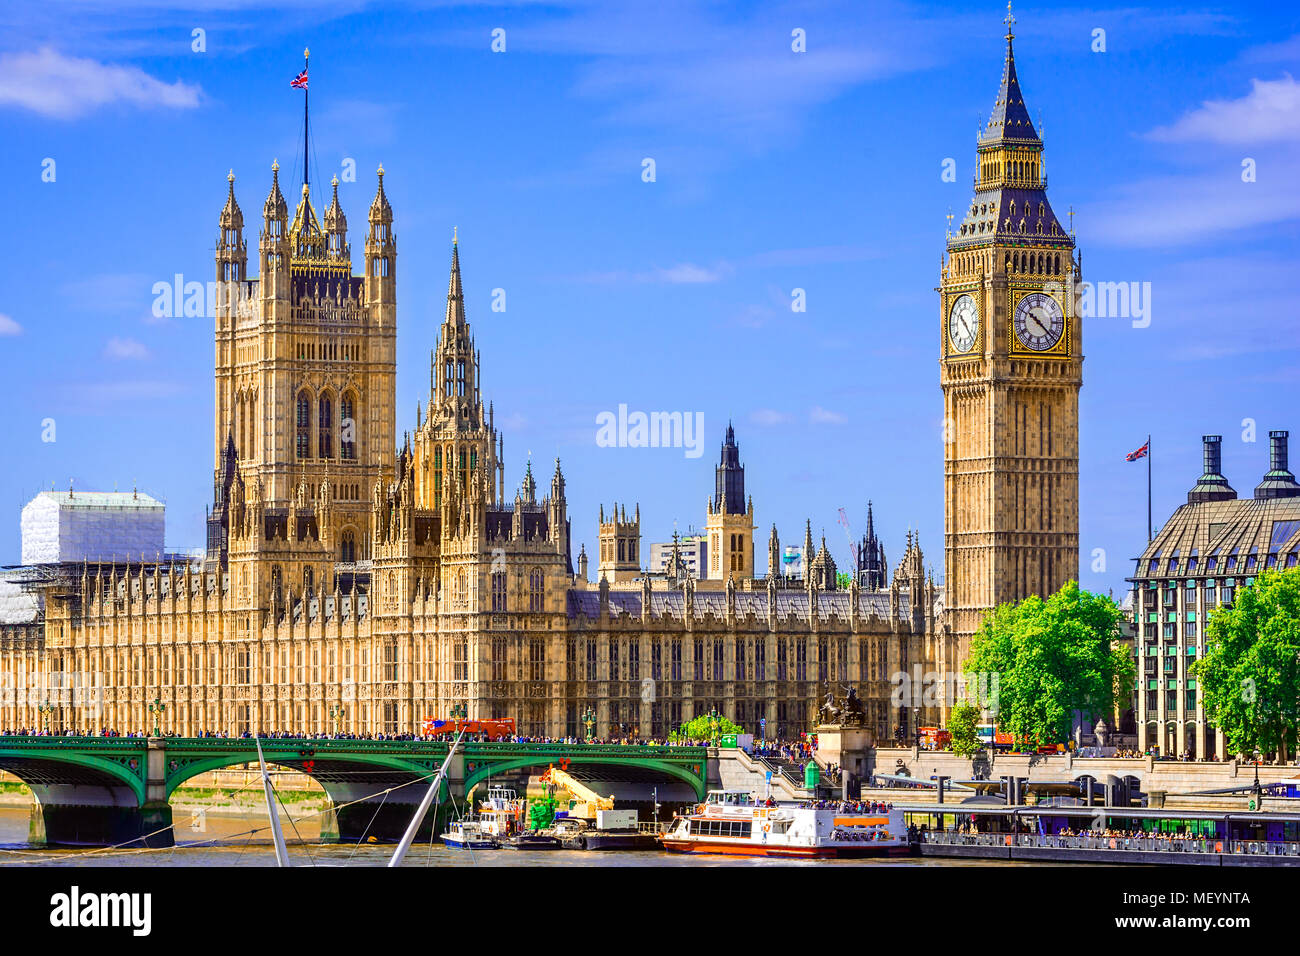 Londres, Reino Unido de Gran Bretaña: Palacio de Westminster Bridge Foto de stock